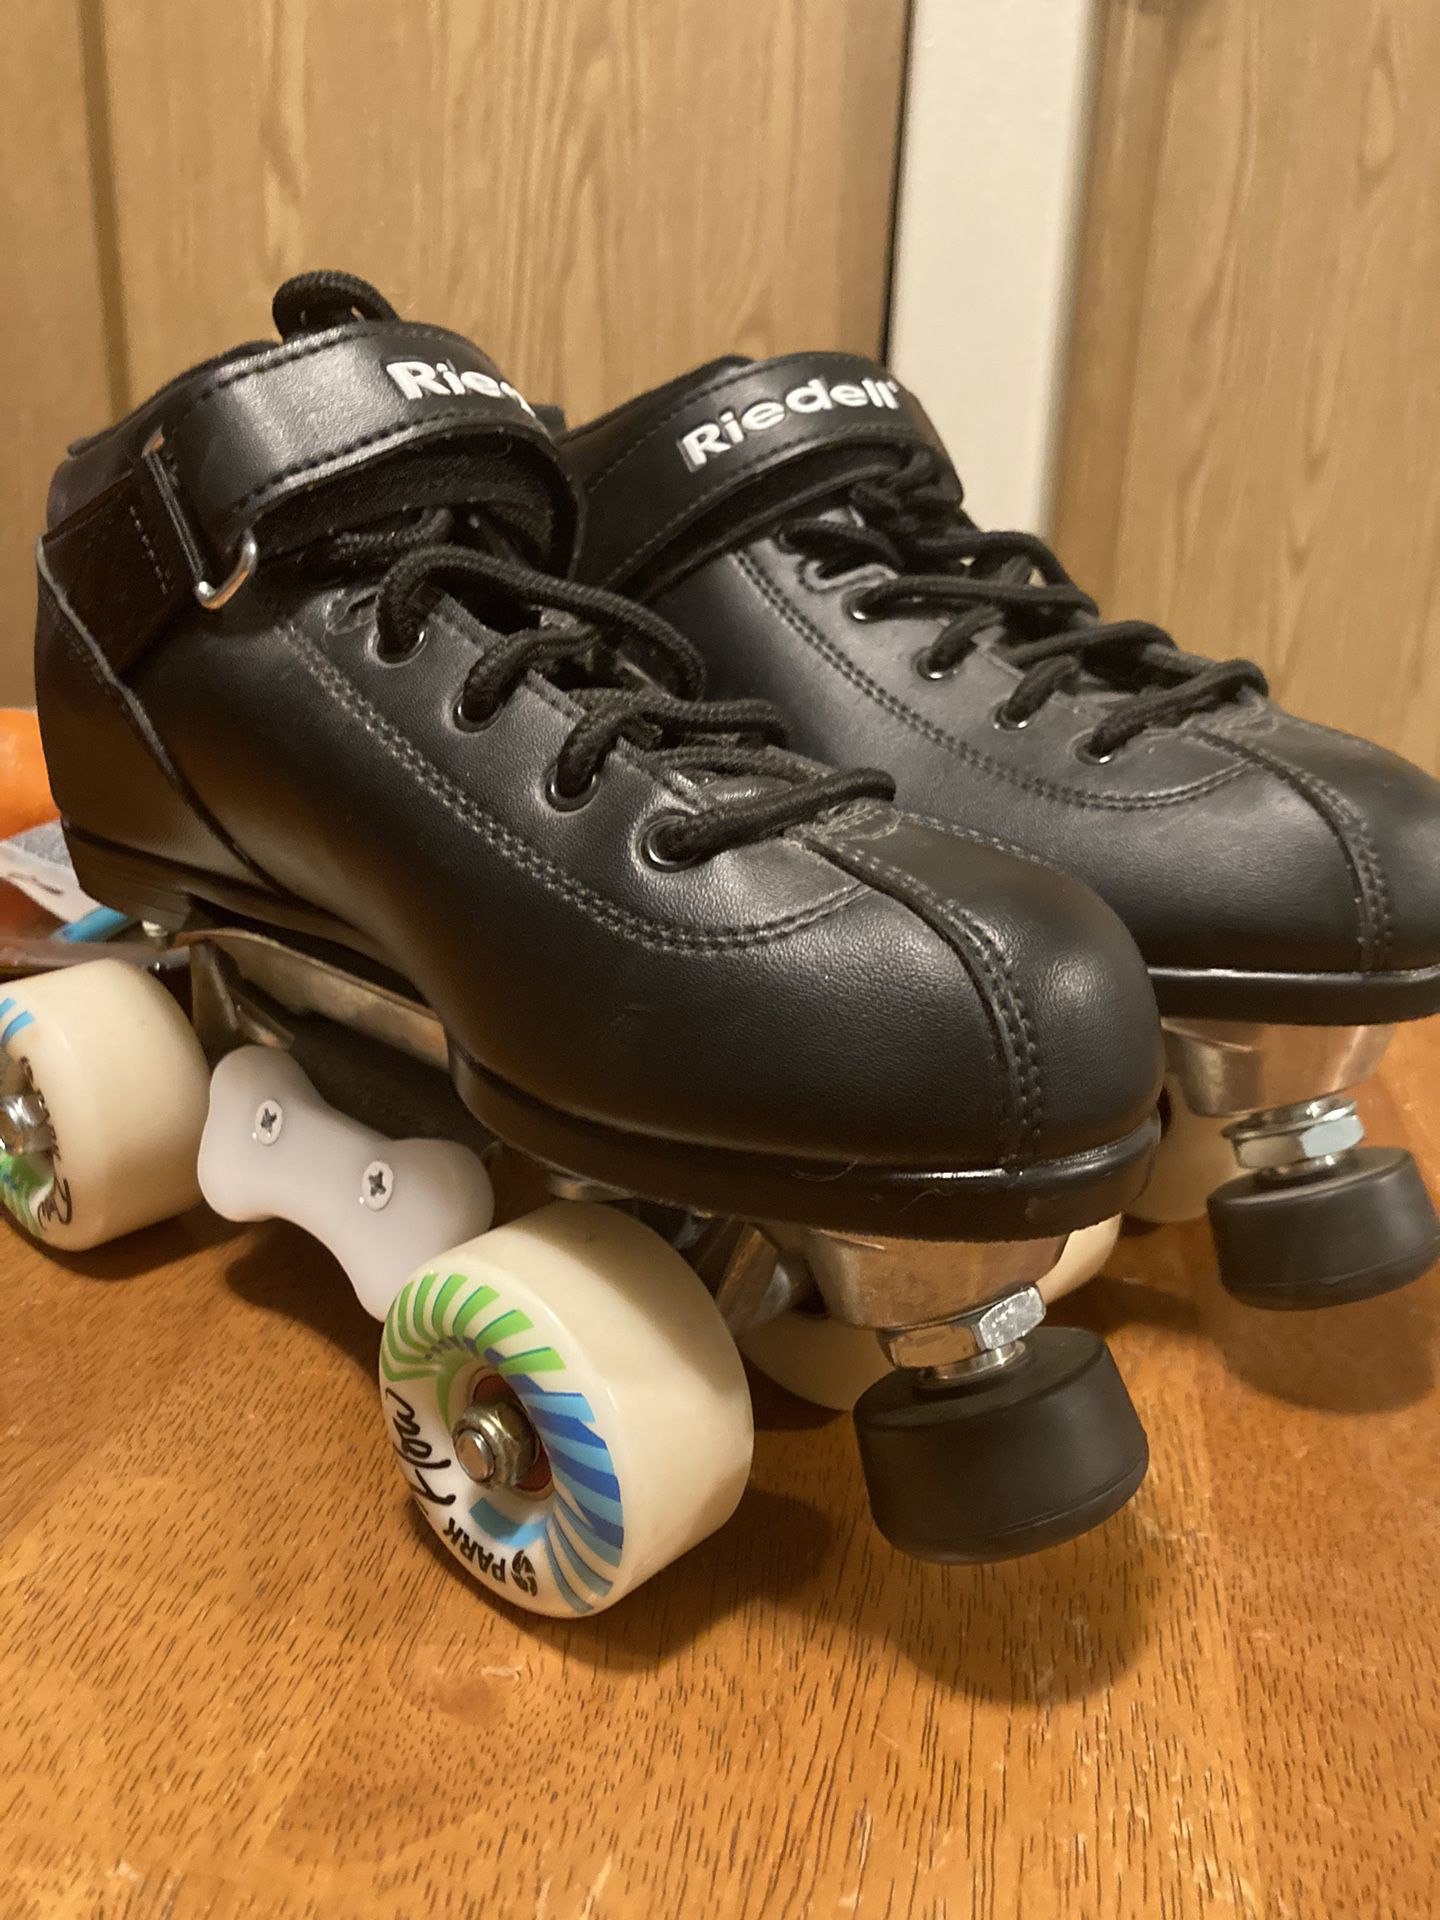 Roller skates 